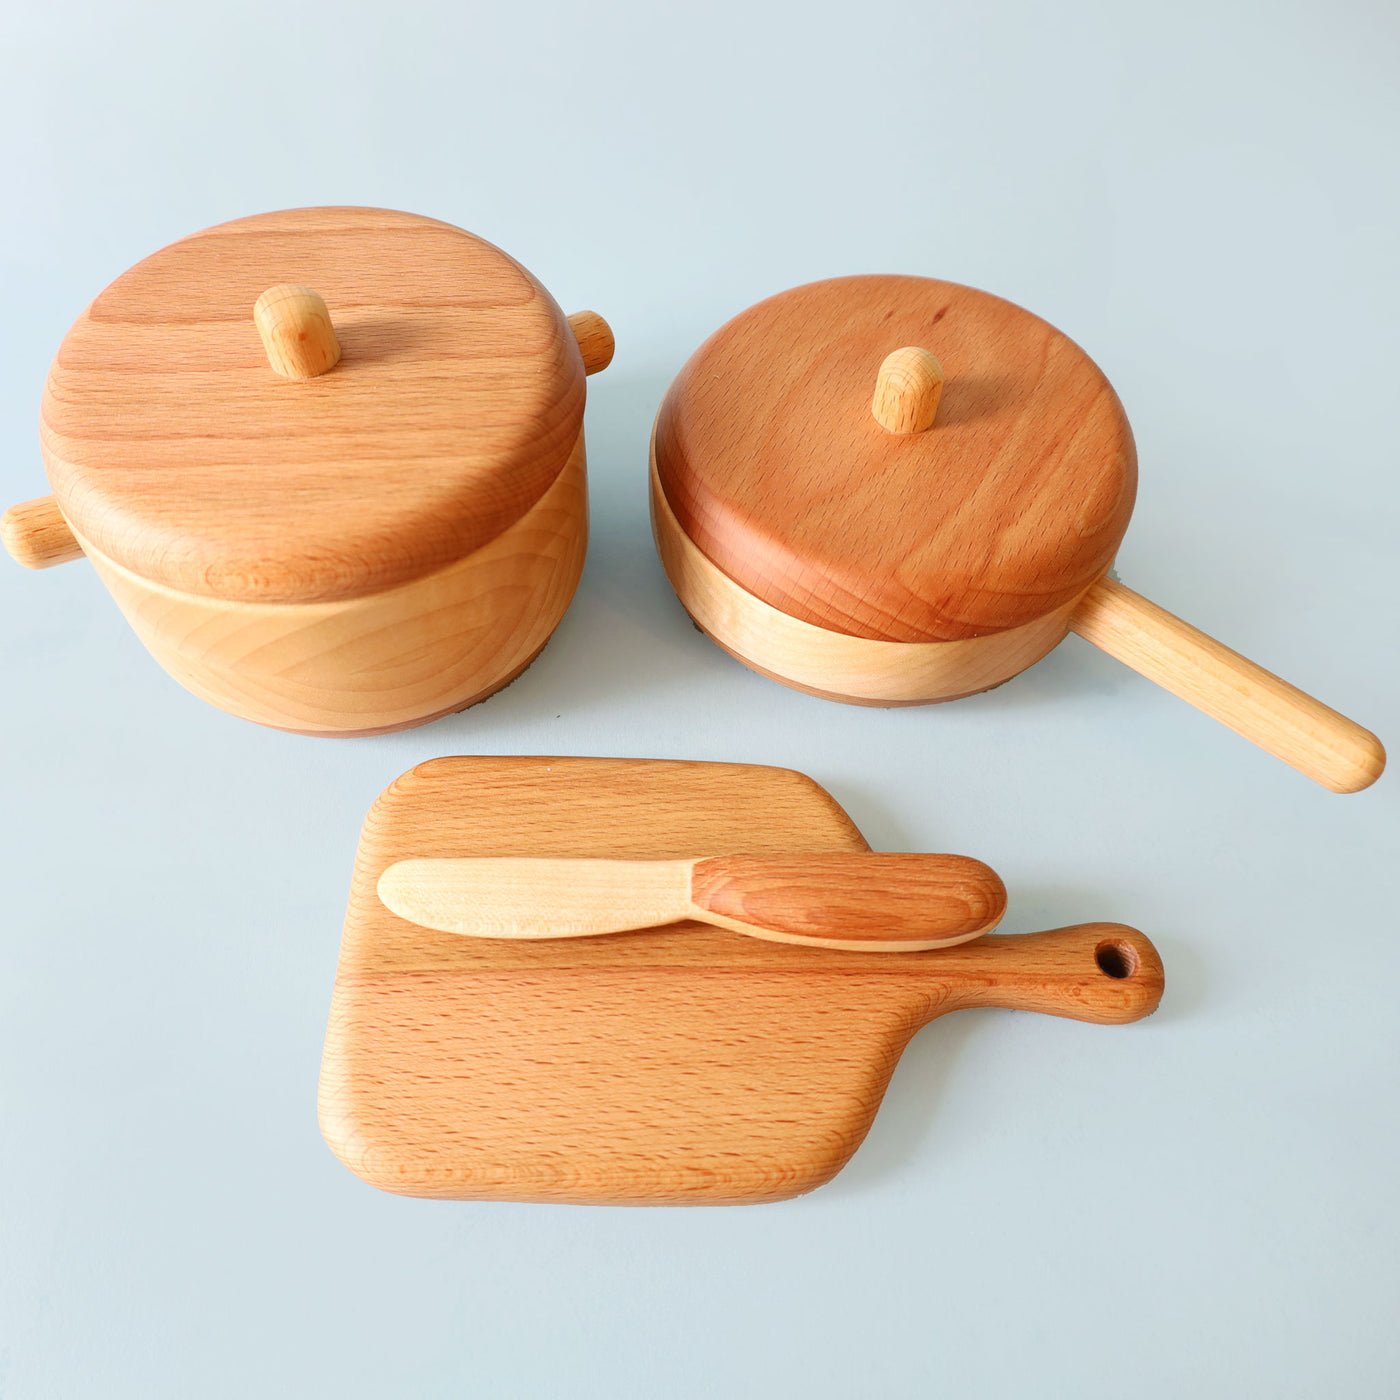 Tateplota Wooden Cookware Set (6 Pieces)